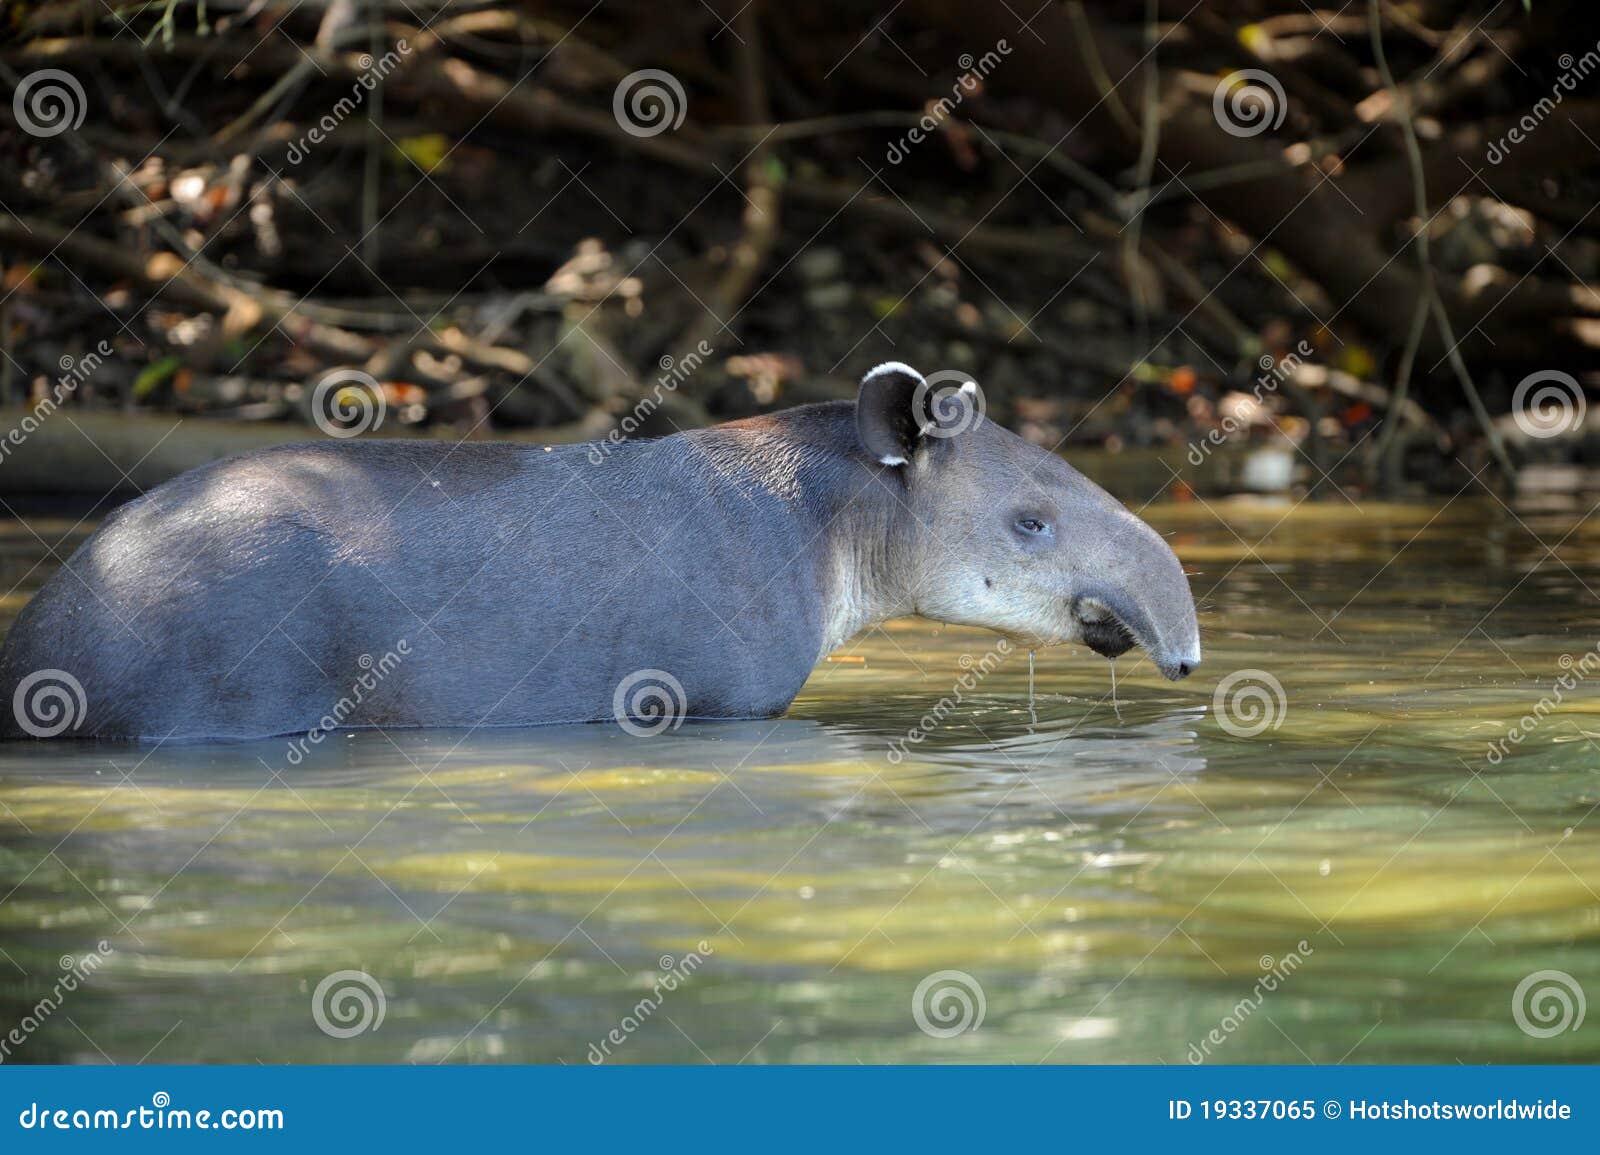 tapir in river,corcovado national park,costa rica